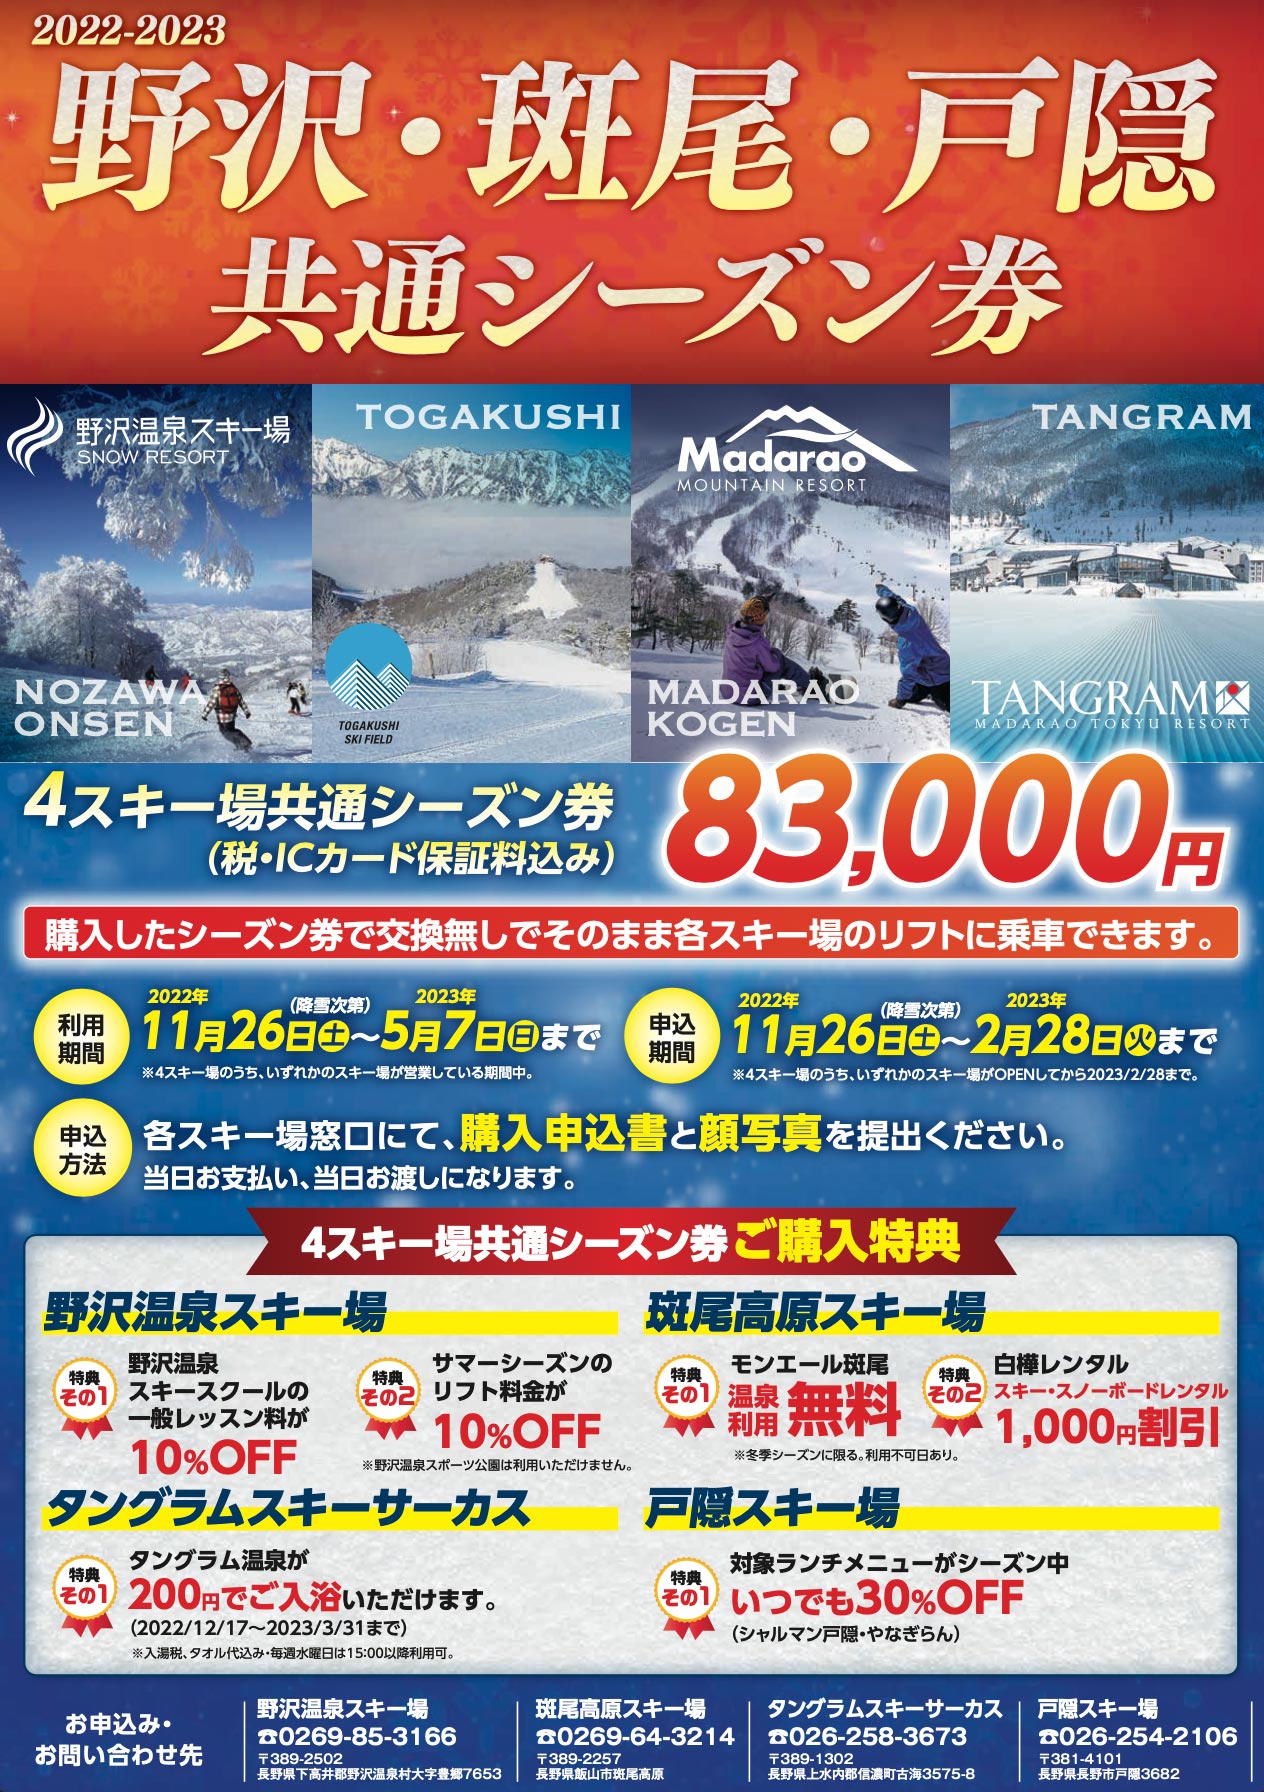 野沢・斑尾・戸隠 NMT Pass共通シーズン券販売中 | 戸隠スキー場【公式